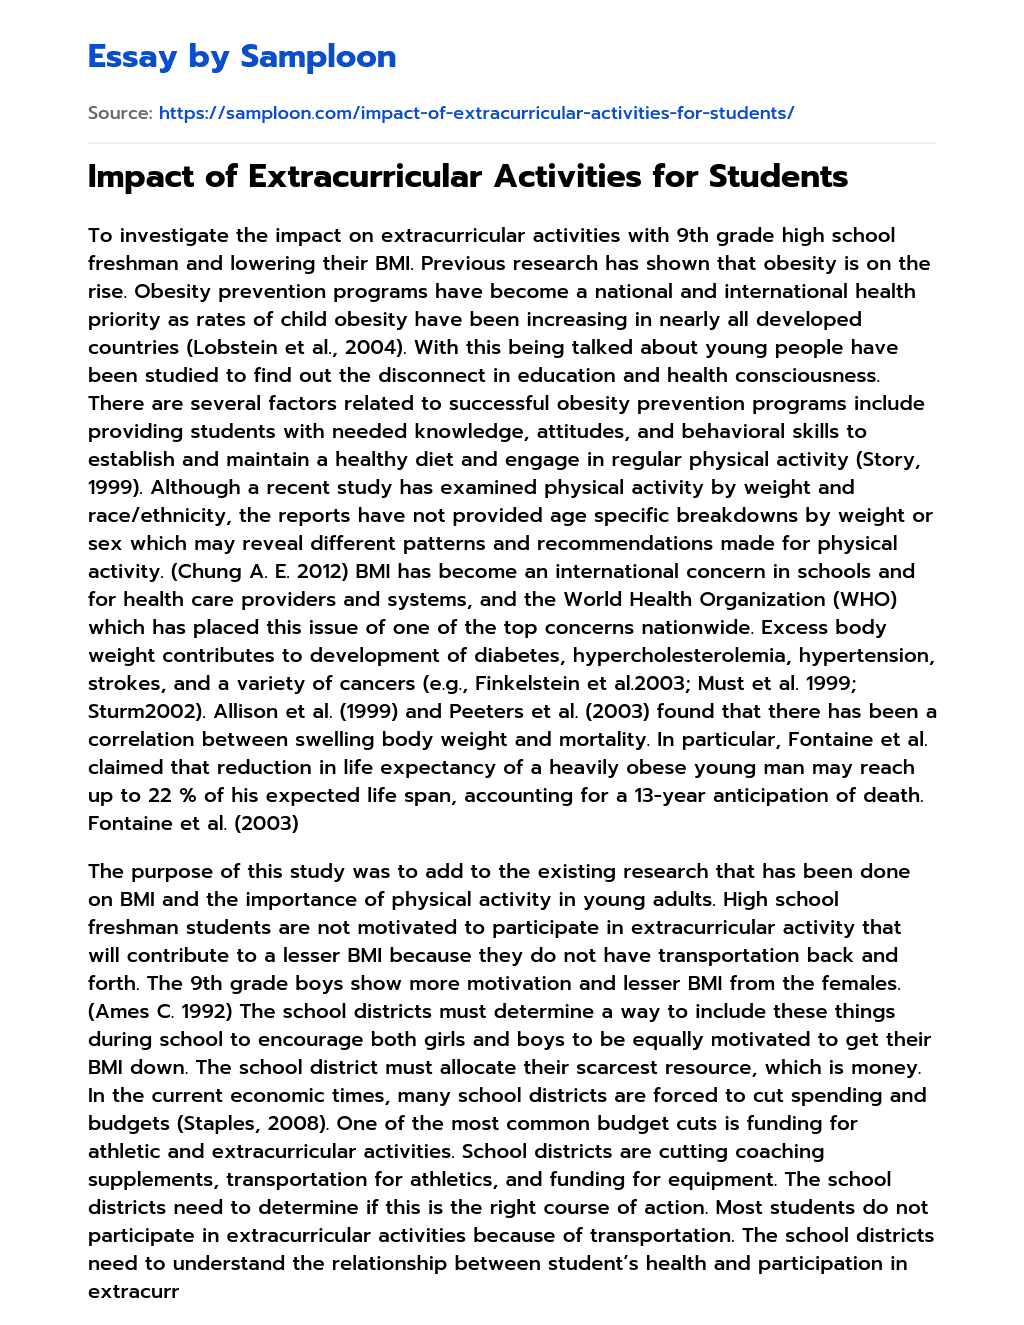 benefit extracurricular activities essay